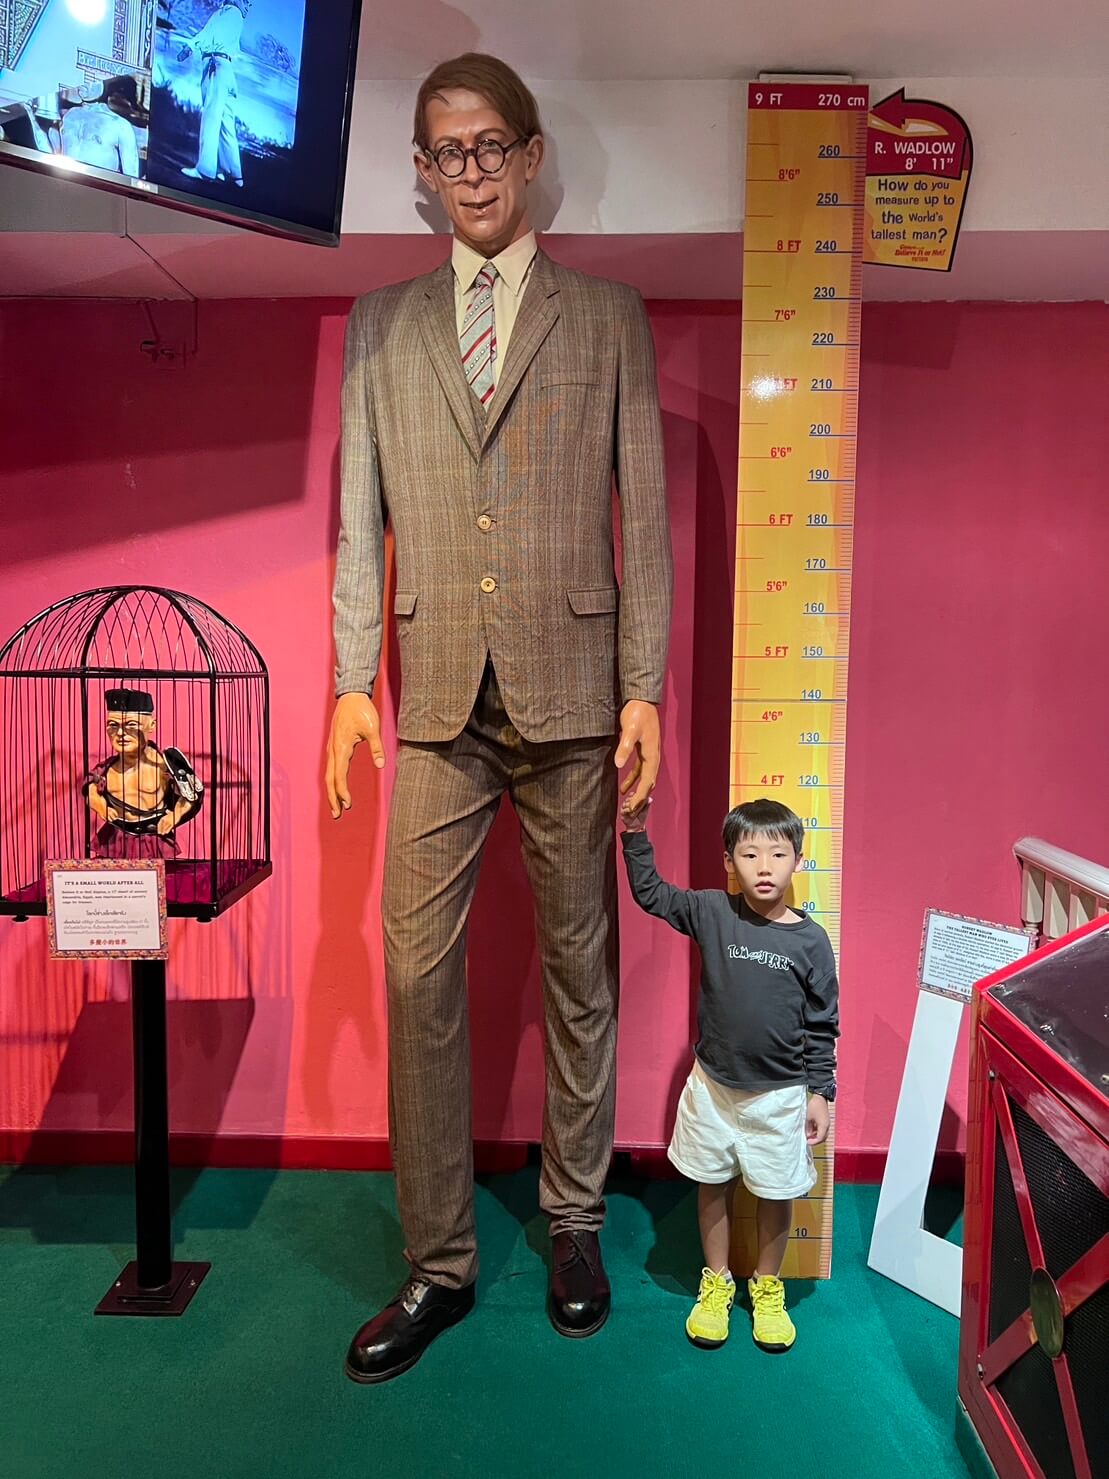 世界一背の高い人の等身大のマネキン